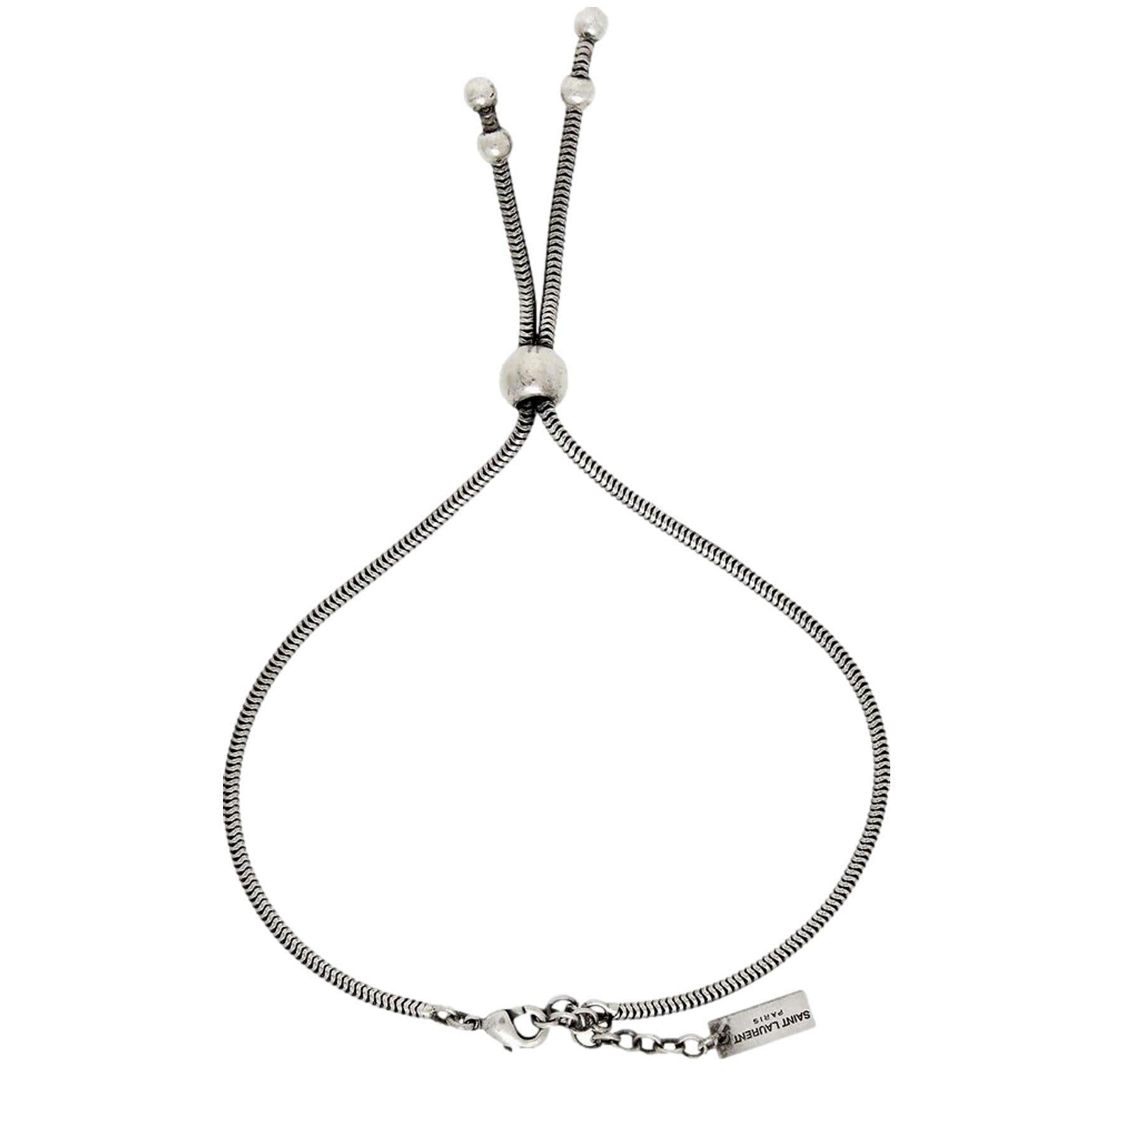 Saint Laurent Silver Bolo Tie Bracelet Large (New) - Image 3 of 3